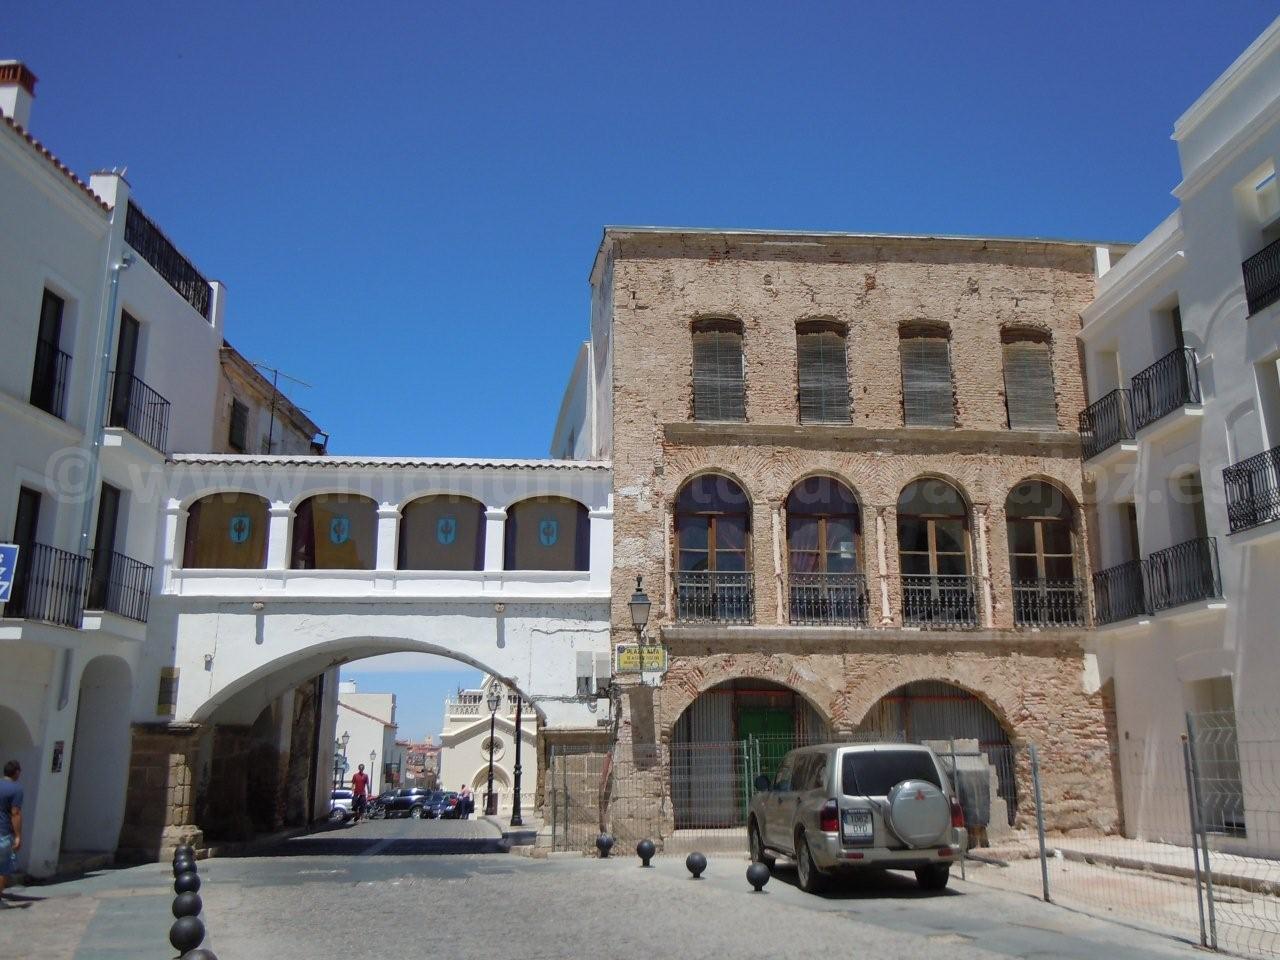 Casa y el Arco del Peso o del Colodrazgo, Plaza Alta de Badajoz